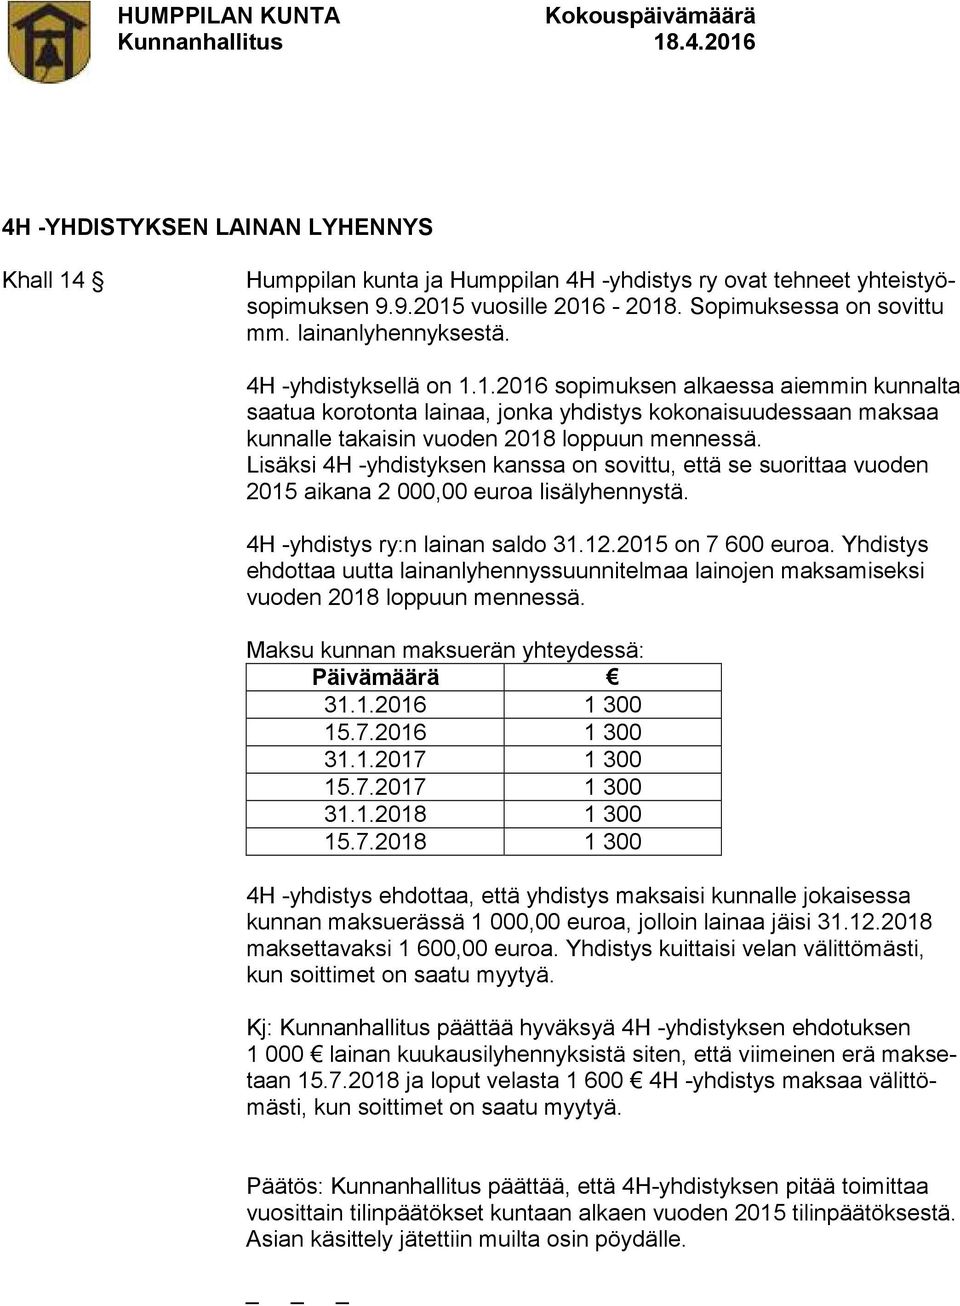 Lisäksi 4H -yhdistyksen kanssa on sovittu, että se suorittaa vuoden 2015 aikana 2 000,00 euroa lisälyhennystä. 4H -yhdistys ry:n lainan saldo 31.12.2015 on 7 600 euroa.